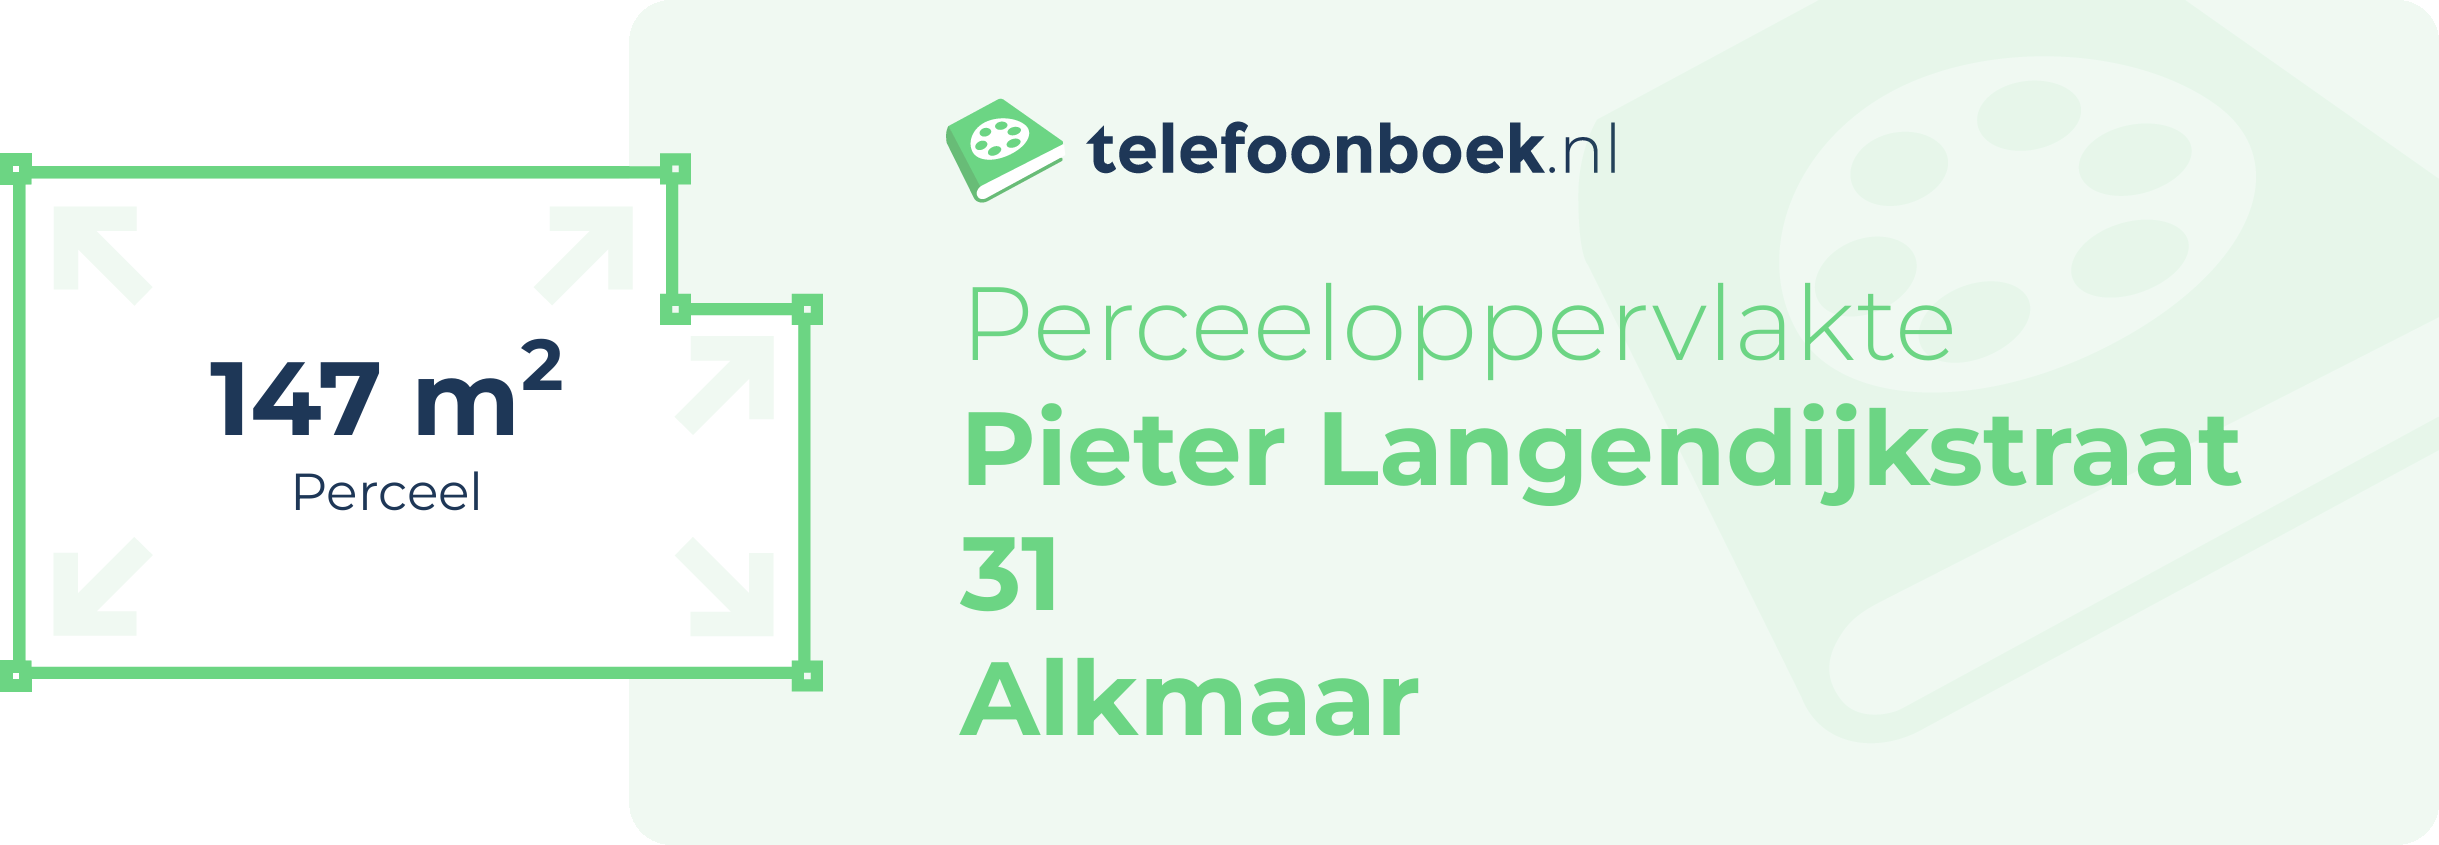 Perceeloppervlakte Pieter Langendijkstraat 31 Alkmaar